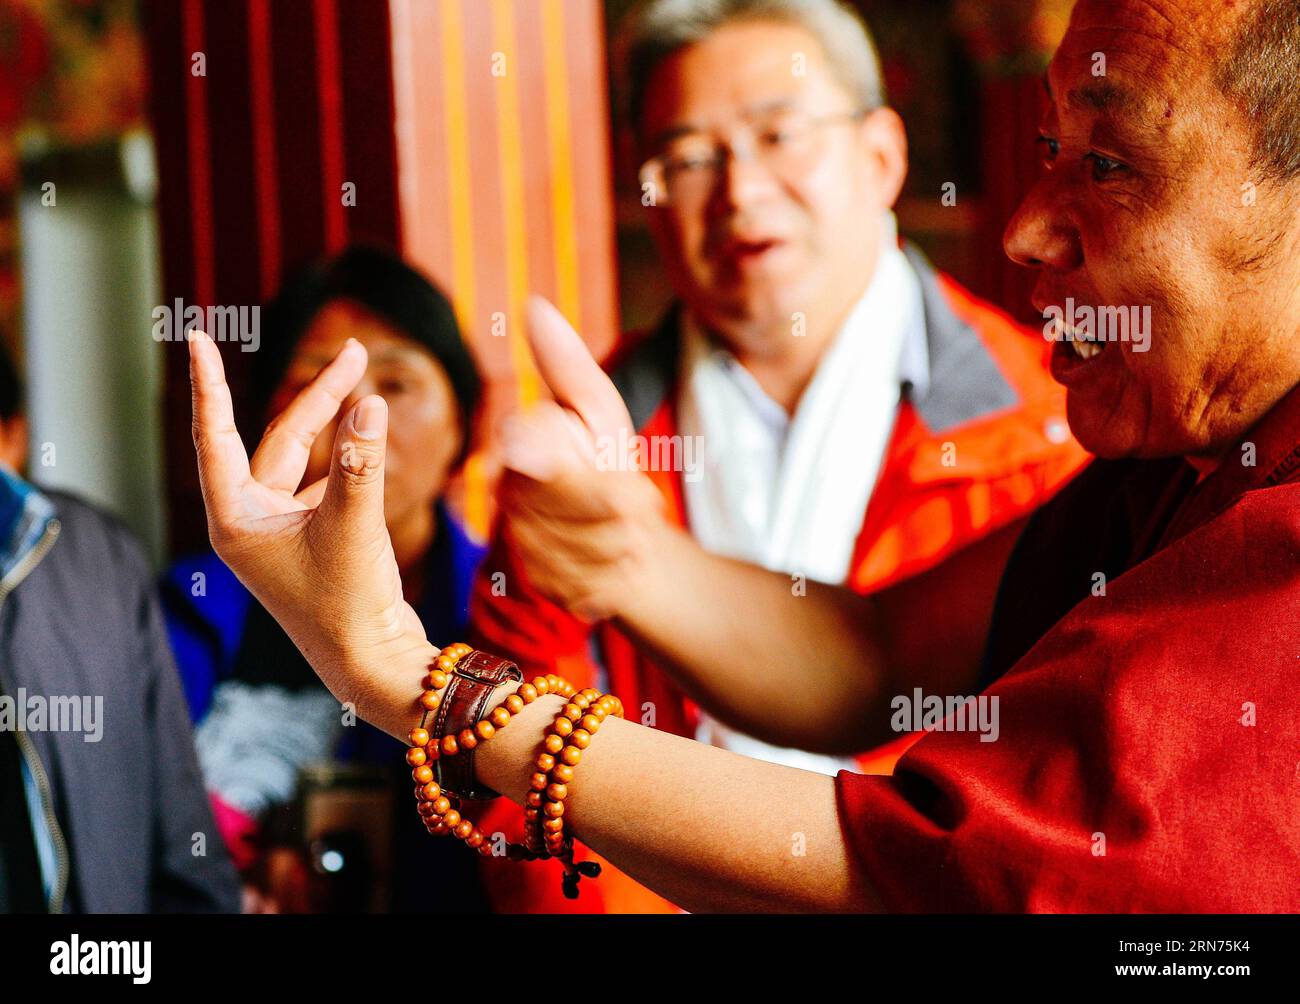 (150818) -- LHASA, 18. August 2015 -- Nyima Tsering (R) stellt Touristen in Lhasa, der Hauptstadt der autonomen Region Tibet im Südwesten Chinas, den Jokhang-Tempel vor, 11. Juli 2015. Der 48-jährige Mönch Nyima Tsering beherrscht Chinesisch und Englisch. Nach dem Abschluss des High-Level Tibetan Buddhism College in Peking übernahm Nyima Tsering den Empfang im Verwaltungsausschuss des Jokhang-Tempels und stellte Touristen aus dem in- und Ausland Tempelinformationen als Reiseleiter vor. ) (xcf/mcg) CHINA-LHASA-REISELEITER-MÖNCH (CN) Chogo PUBLICATIONxNOTxINxCHN 150818 Lhasa 18. August 2015 Nyima Tsering Stockfoto